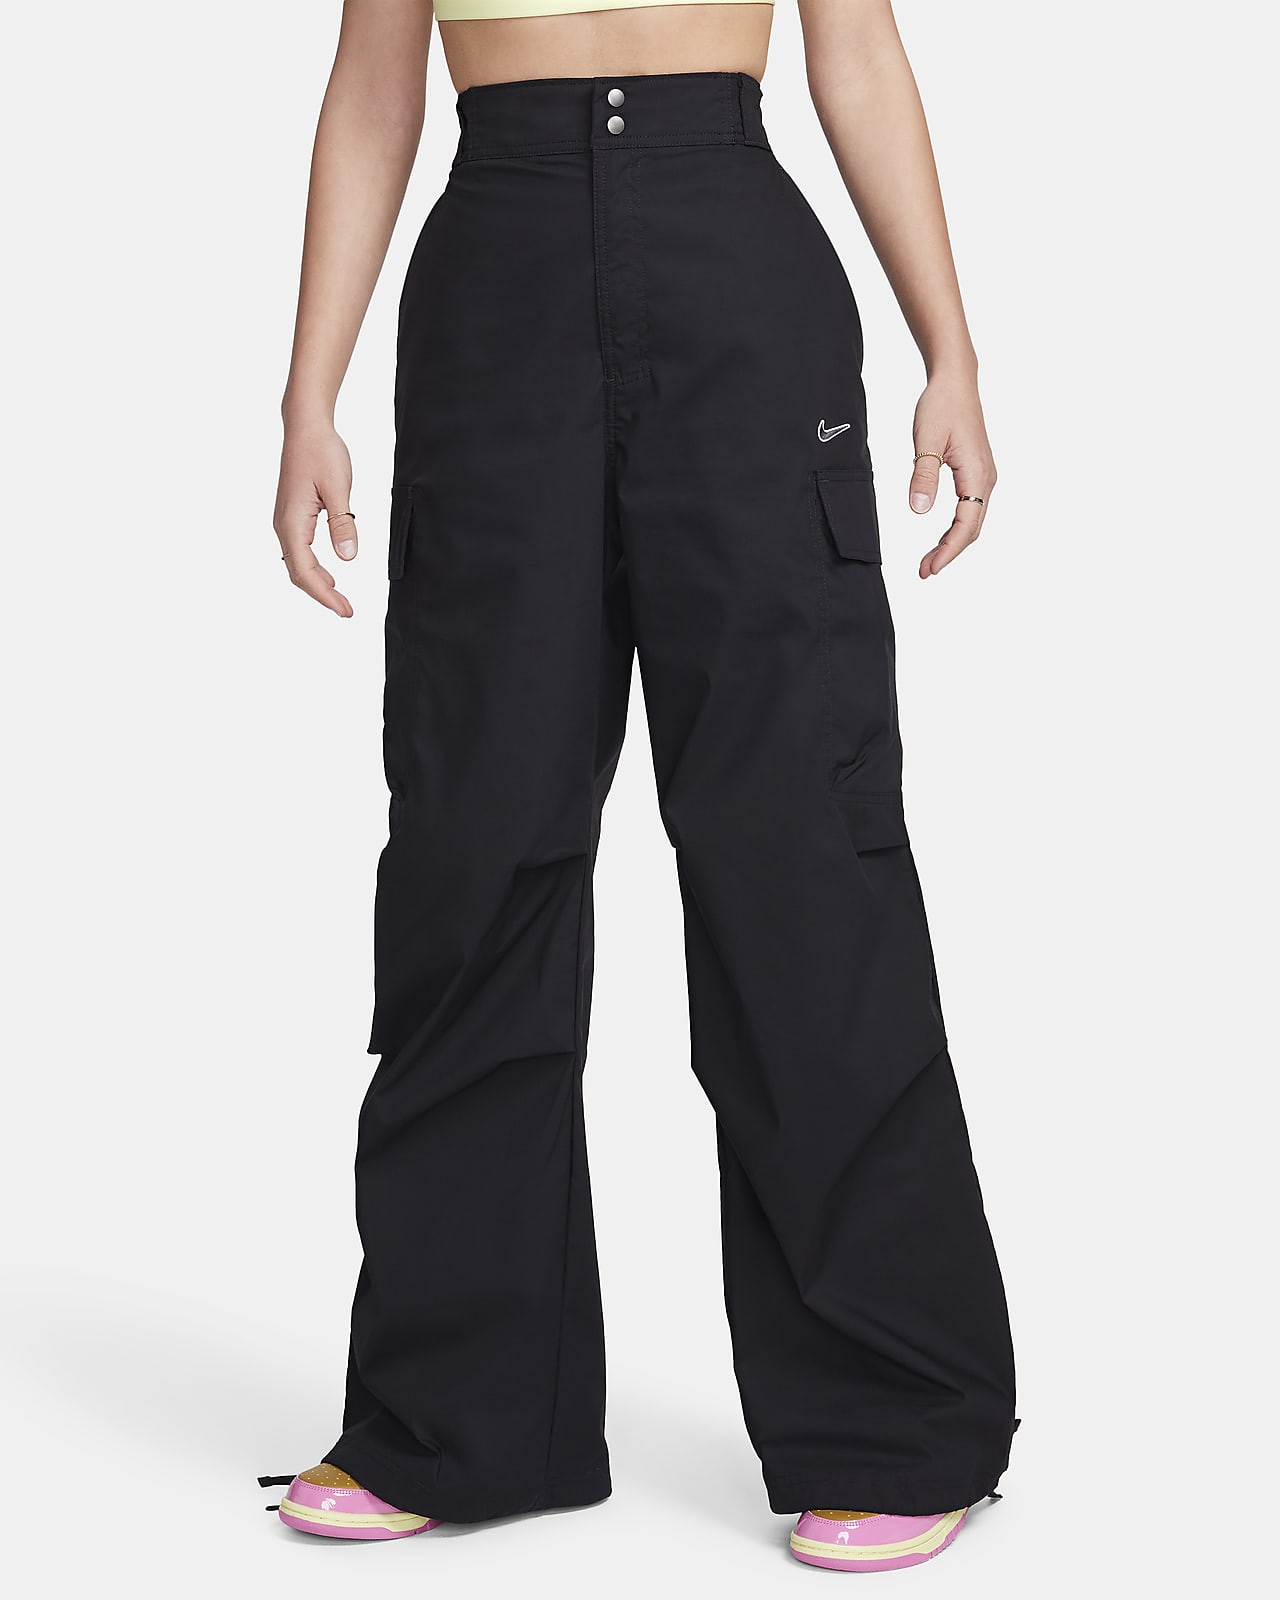 Γυναικείο ψηλόμεσο υφαντό παντελόνι cargo σε ριχτή γραμμή Nike Sportswear